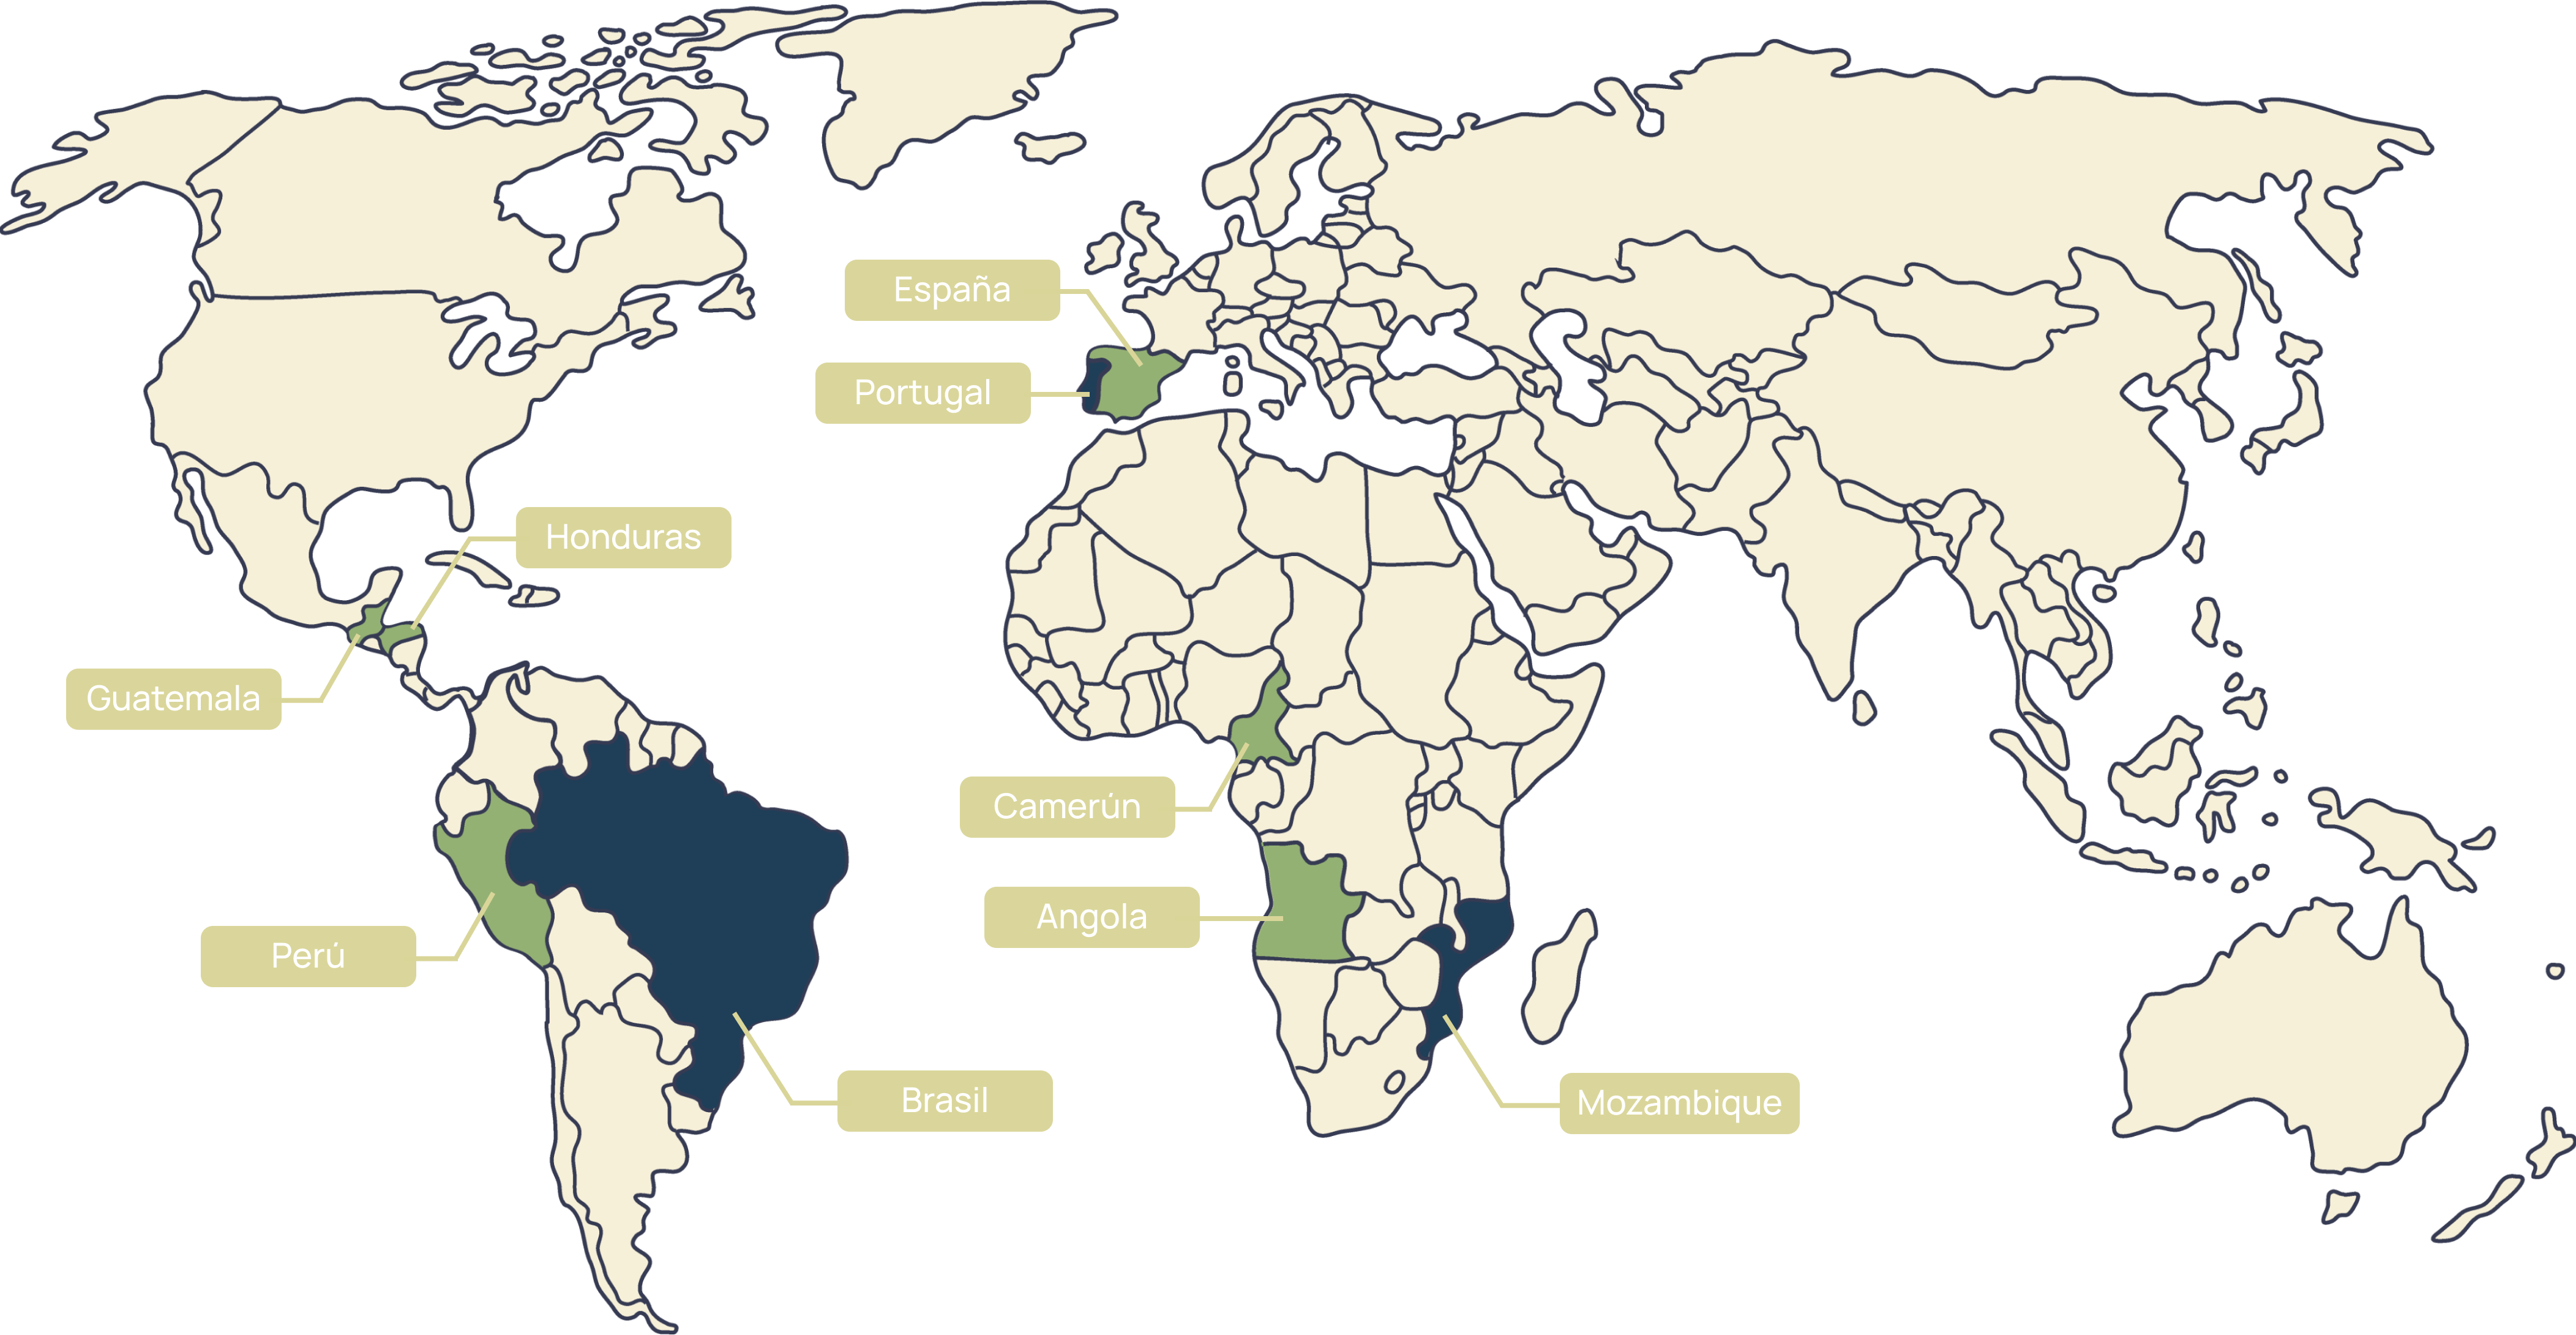 Mapa del mundo con los países donde actúa el Instituto CRIIA